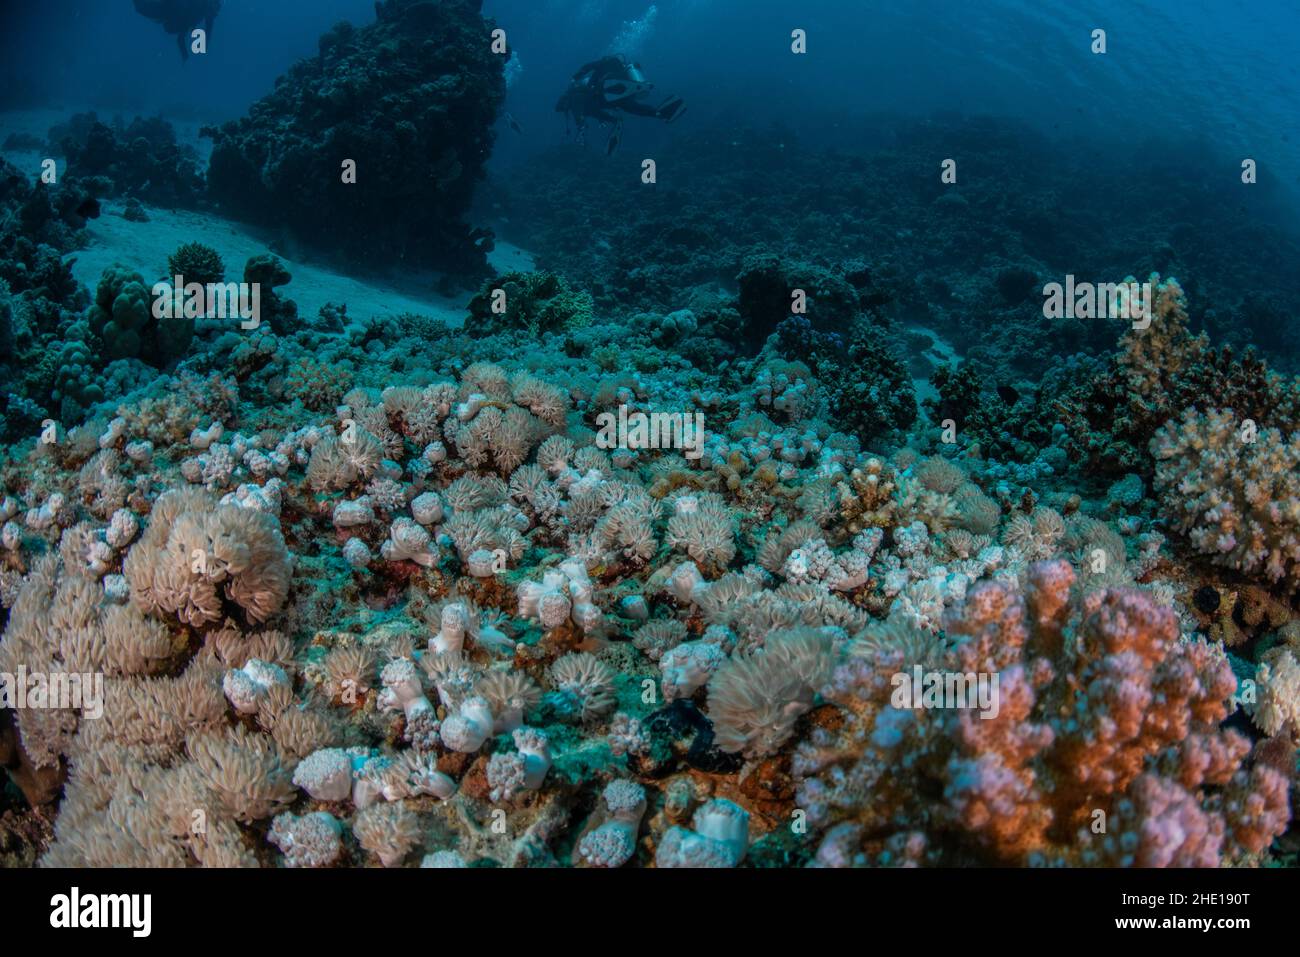 Il fondo marino nel mare rosso d'Egitto con una barriera corallina costituita in gran parte da vari coralli molli come gli xenidi pulsanti. Foto Stock